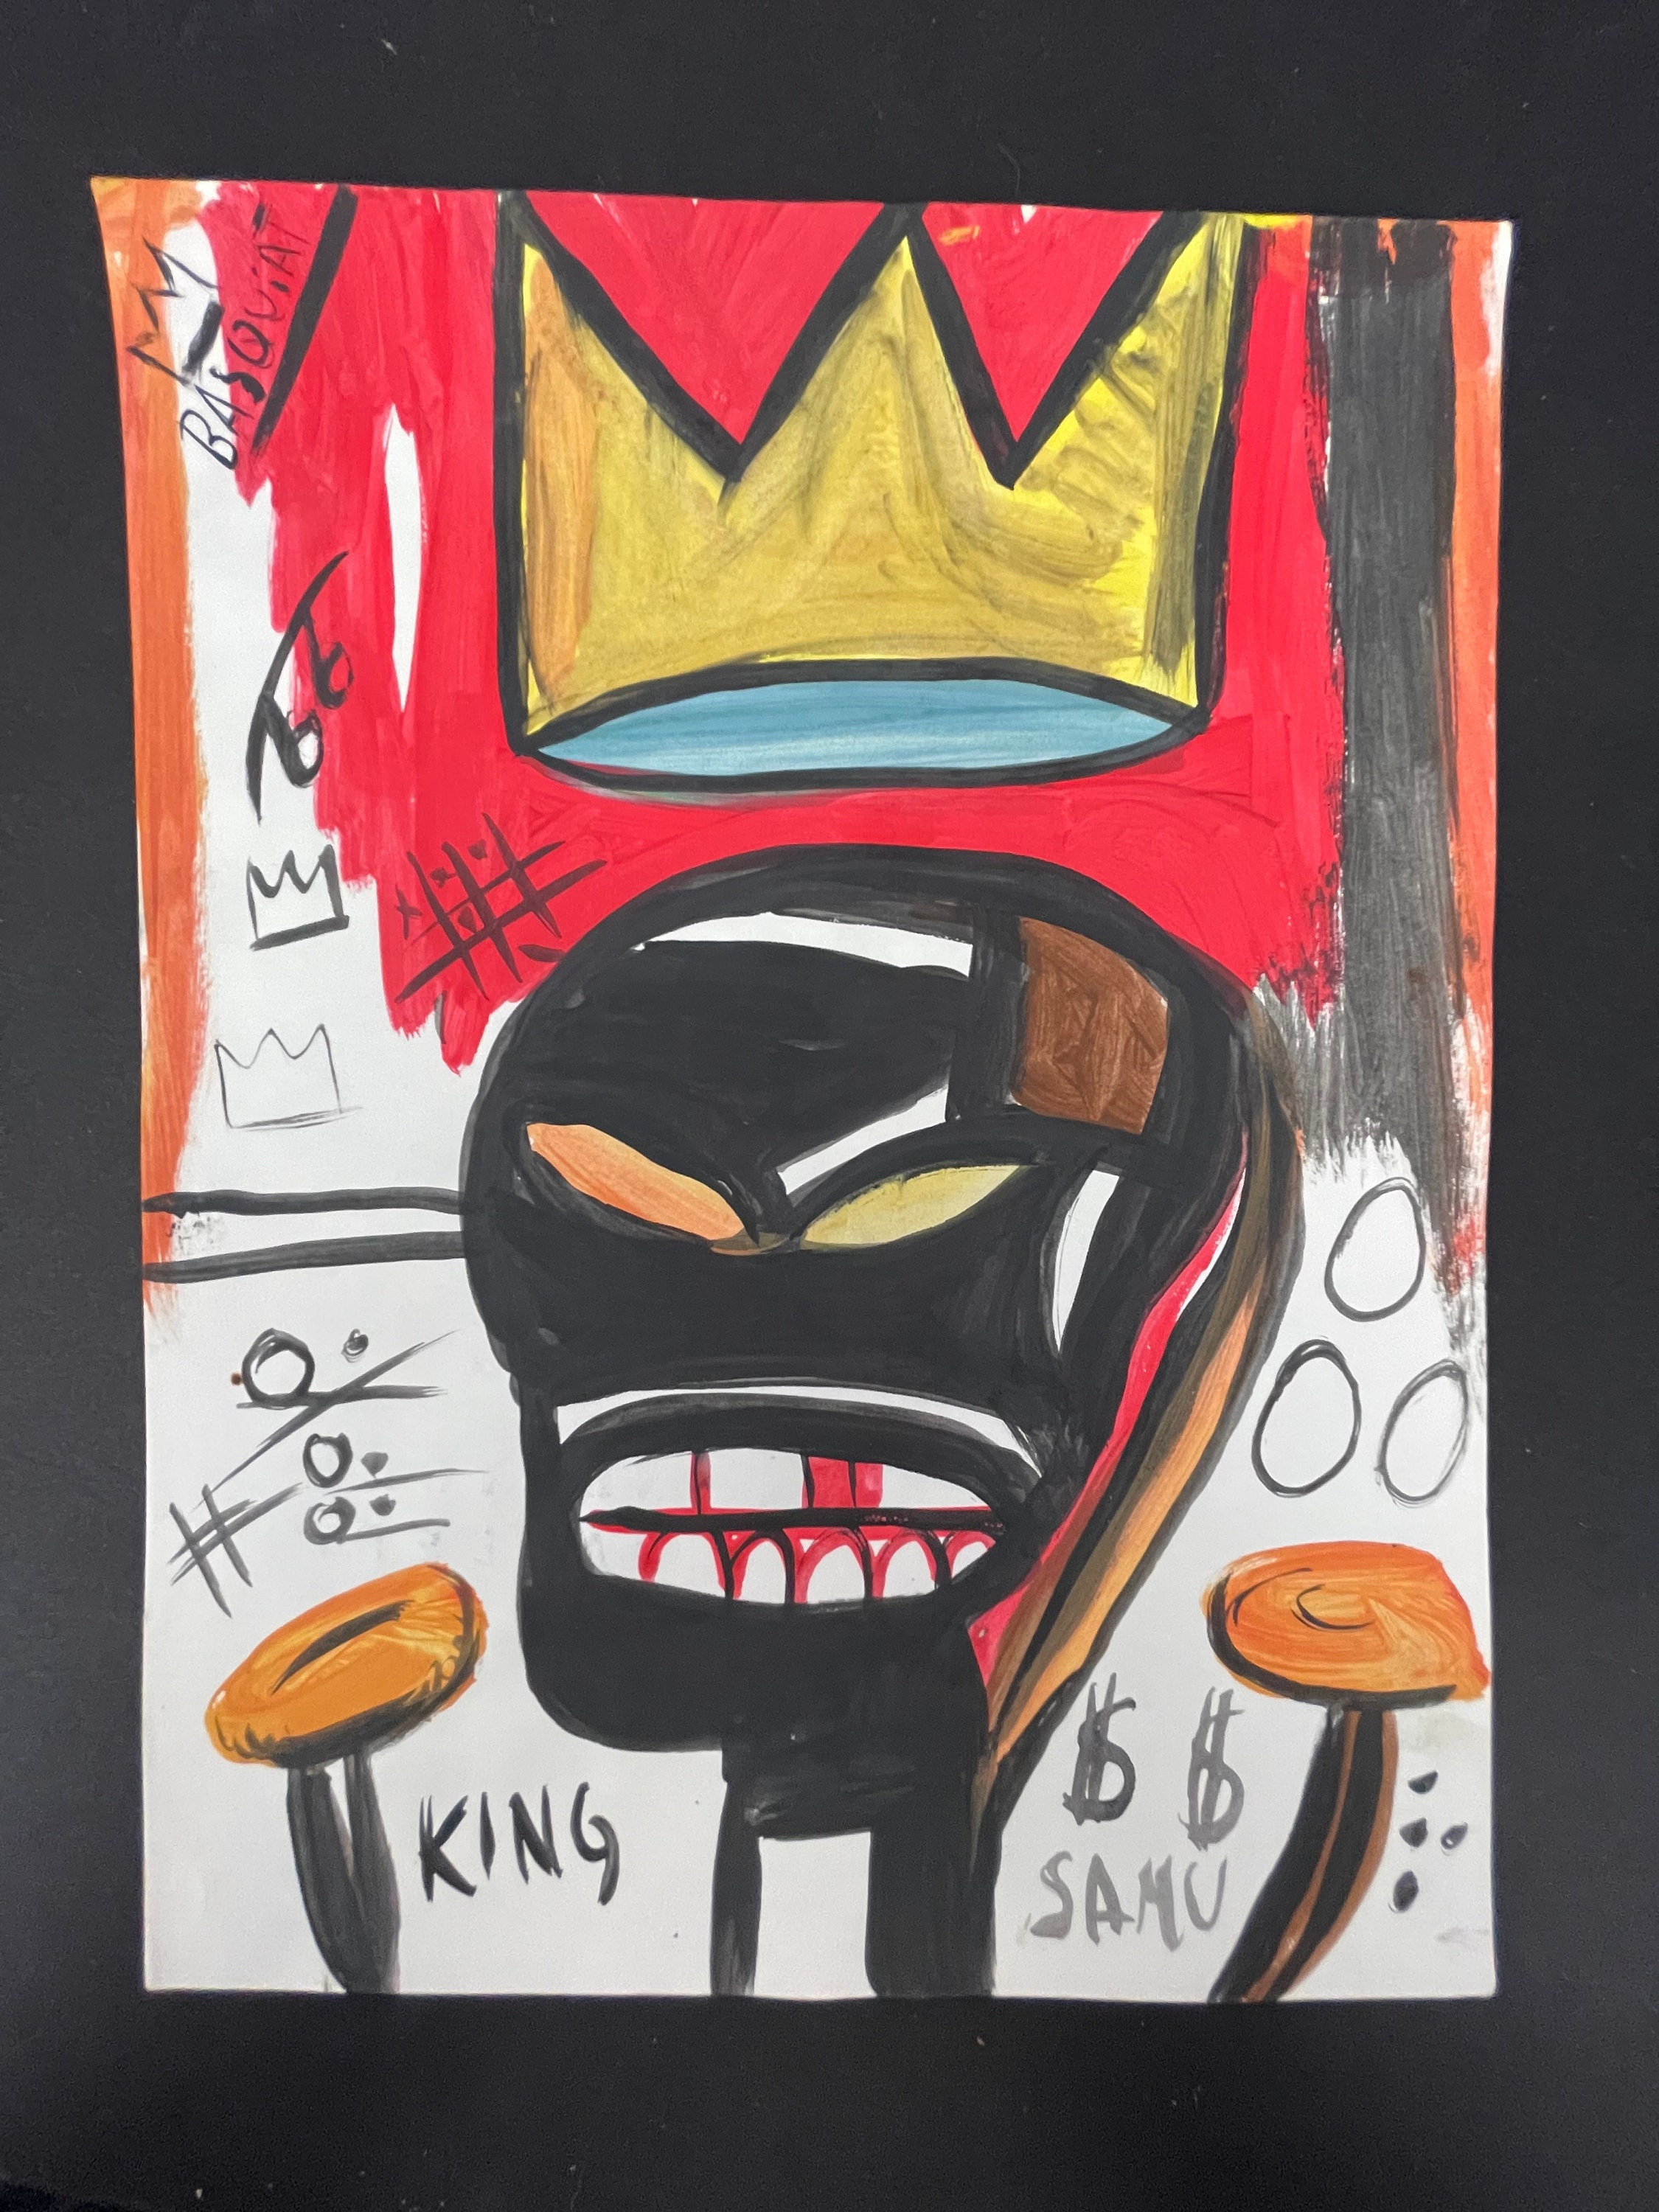 Set 3 pendientes Jean-Michel Basquiat - Accesorios - Hombre